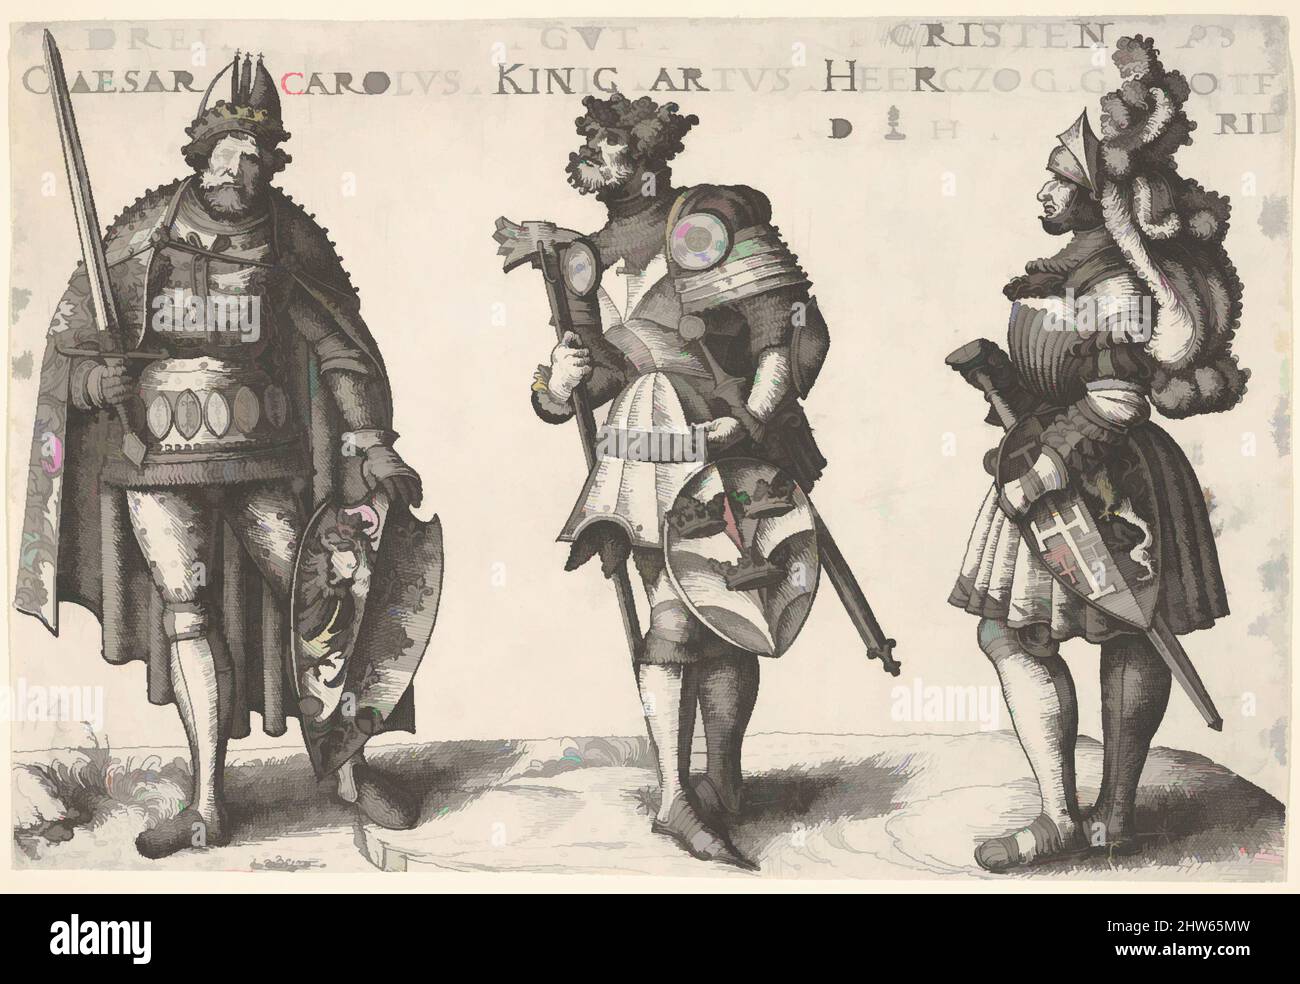 Art inspiré par trois chrétiens dignes : Charlemagne, le roi Arthur, et Geoffrey de Bouillon, ca. 1516, Décapage ; deuxième état de deux, feuille : 5 7/8 x 8 11/16 po. (15 x 22 cm), Prints, Daniel Hopfer (allemand, Kaufbeuren 1471–1536 Augsbourg), d'après Hans Burgkmair (allemand, Augsburg 1473–1531, oeuvres classiques modernisées par Artotop avec un peu de modernité. Formes, couleur et valeur, impact visuel accrocheur sur l'art émotions par la liberté d'œuvres d'art d'une manière contemporaine. Un message intemporel qui cherche une nouvelle direction créative. Artistes qui se tournent vers le support numérique et créent le NFT Artotop Banque D'Images